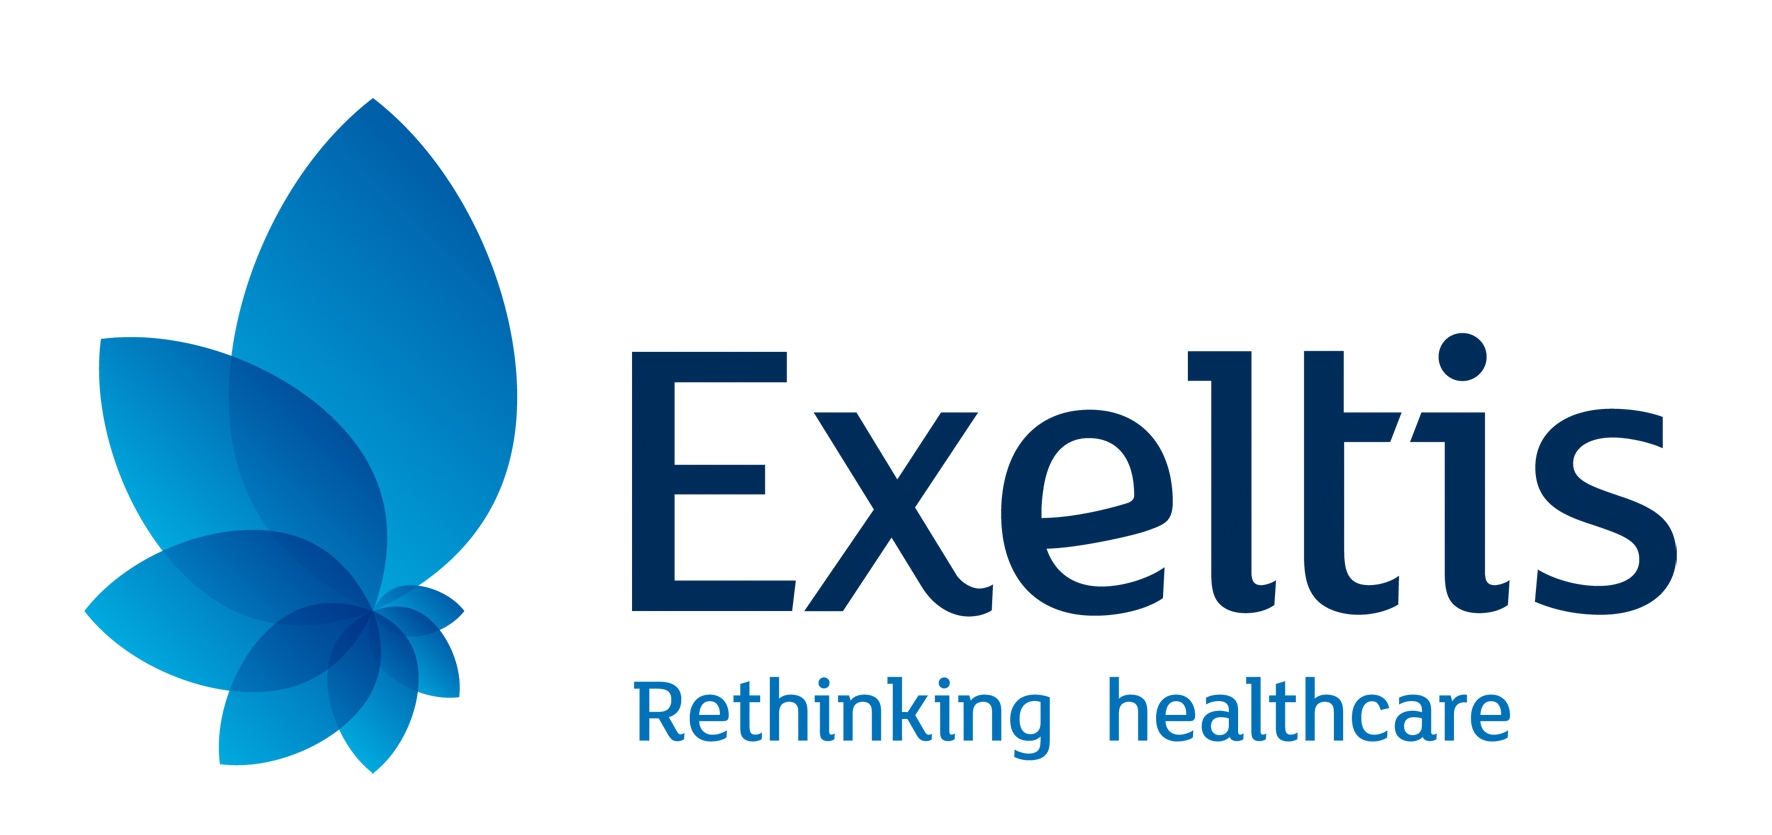 Logotipo Exeltis